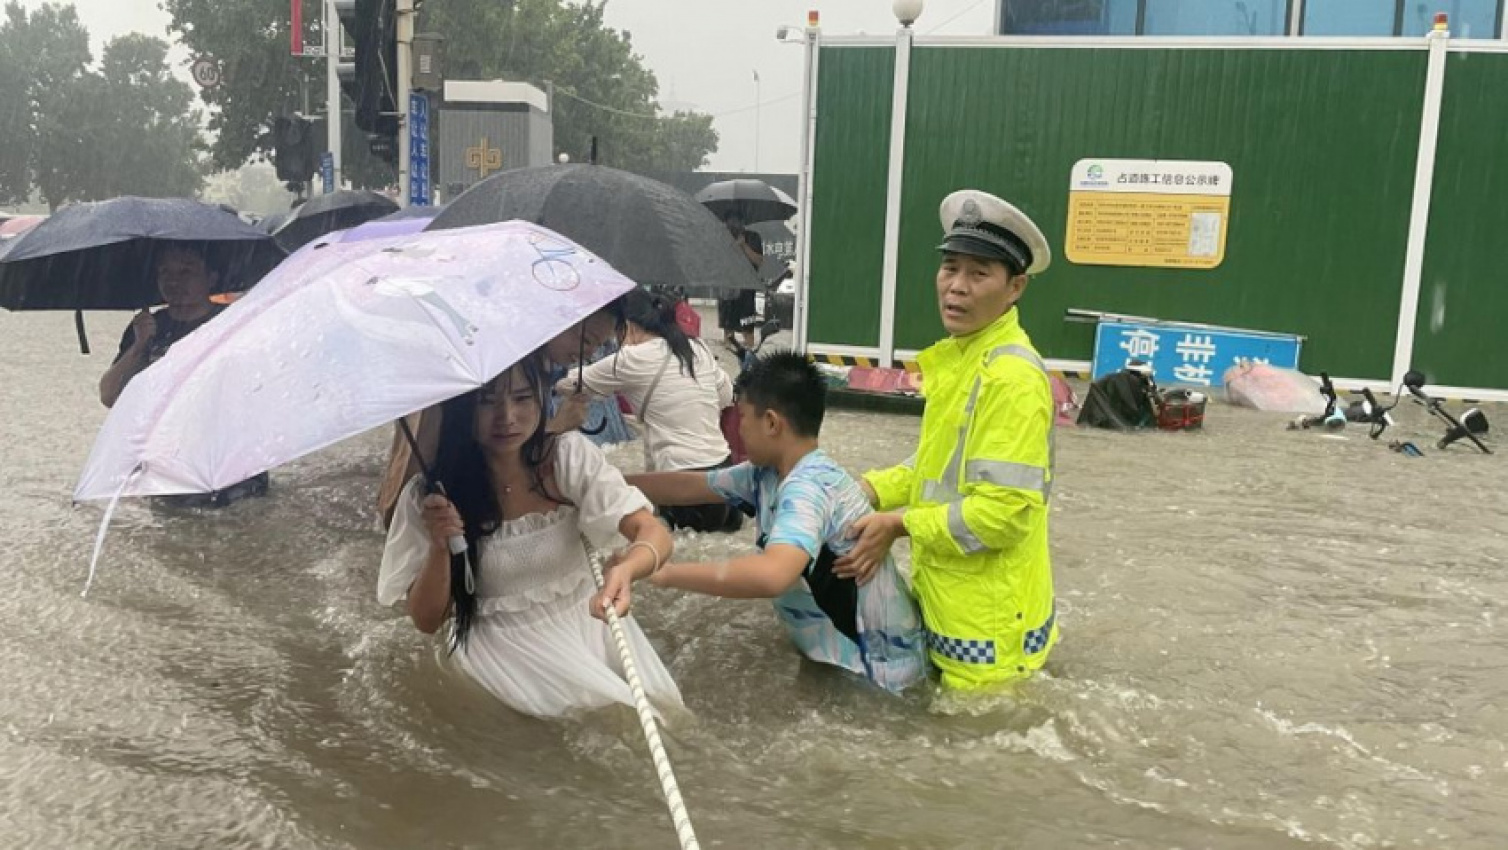 autos, cars, auto news, banjir besar, bencana alam, china, kereta api, luoyang, tenggelam, zhengzhou, banjir besar di china tenggelamkan kereta api bawah tanah – 12 maut, 5 cedera, ratusan terselamat